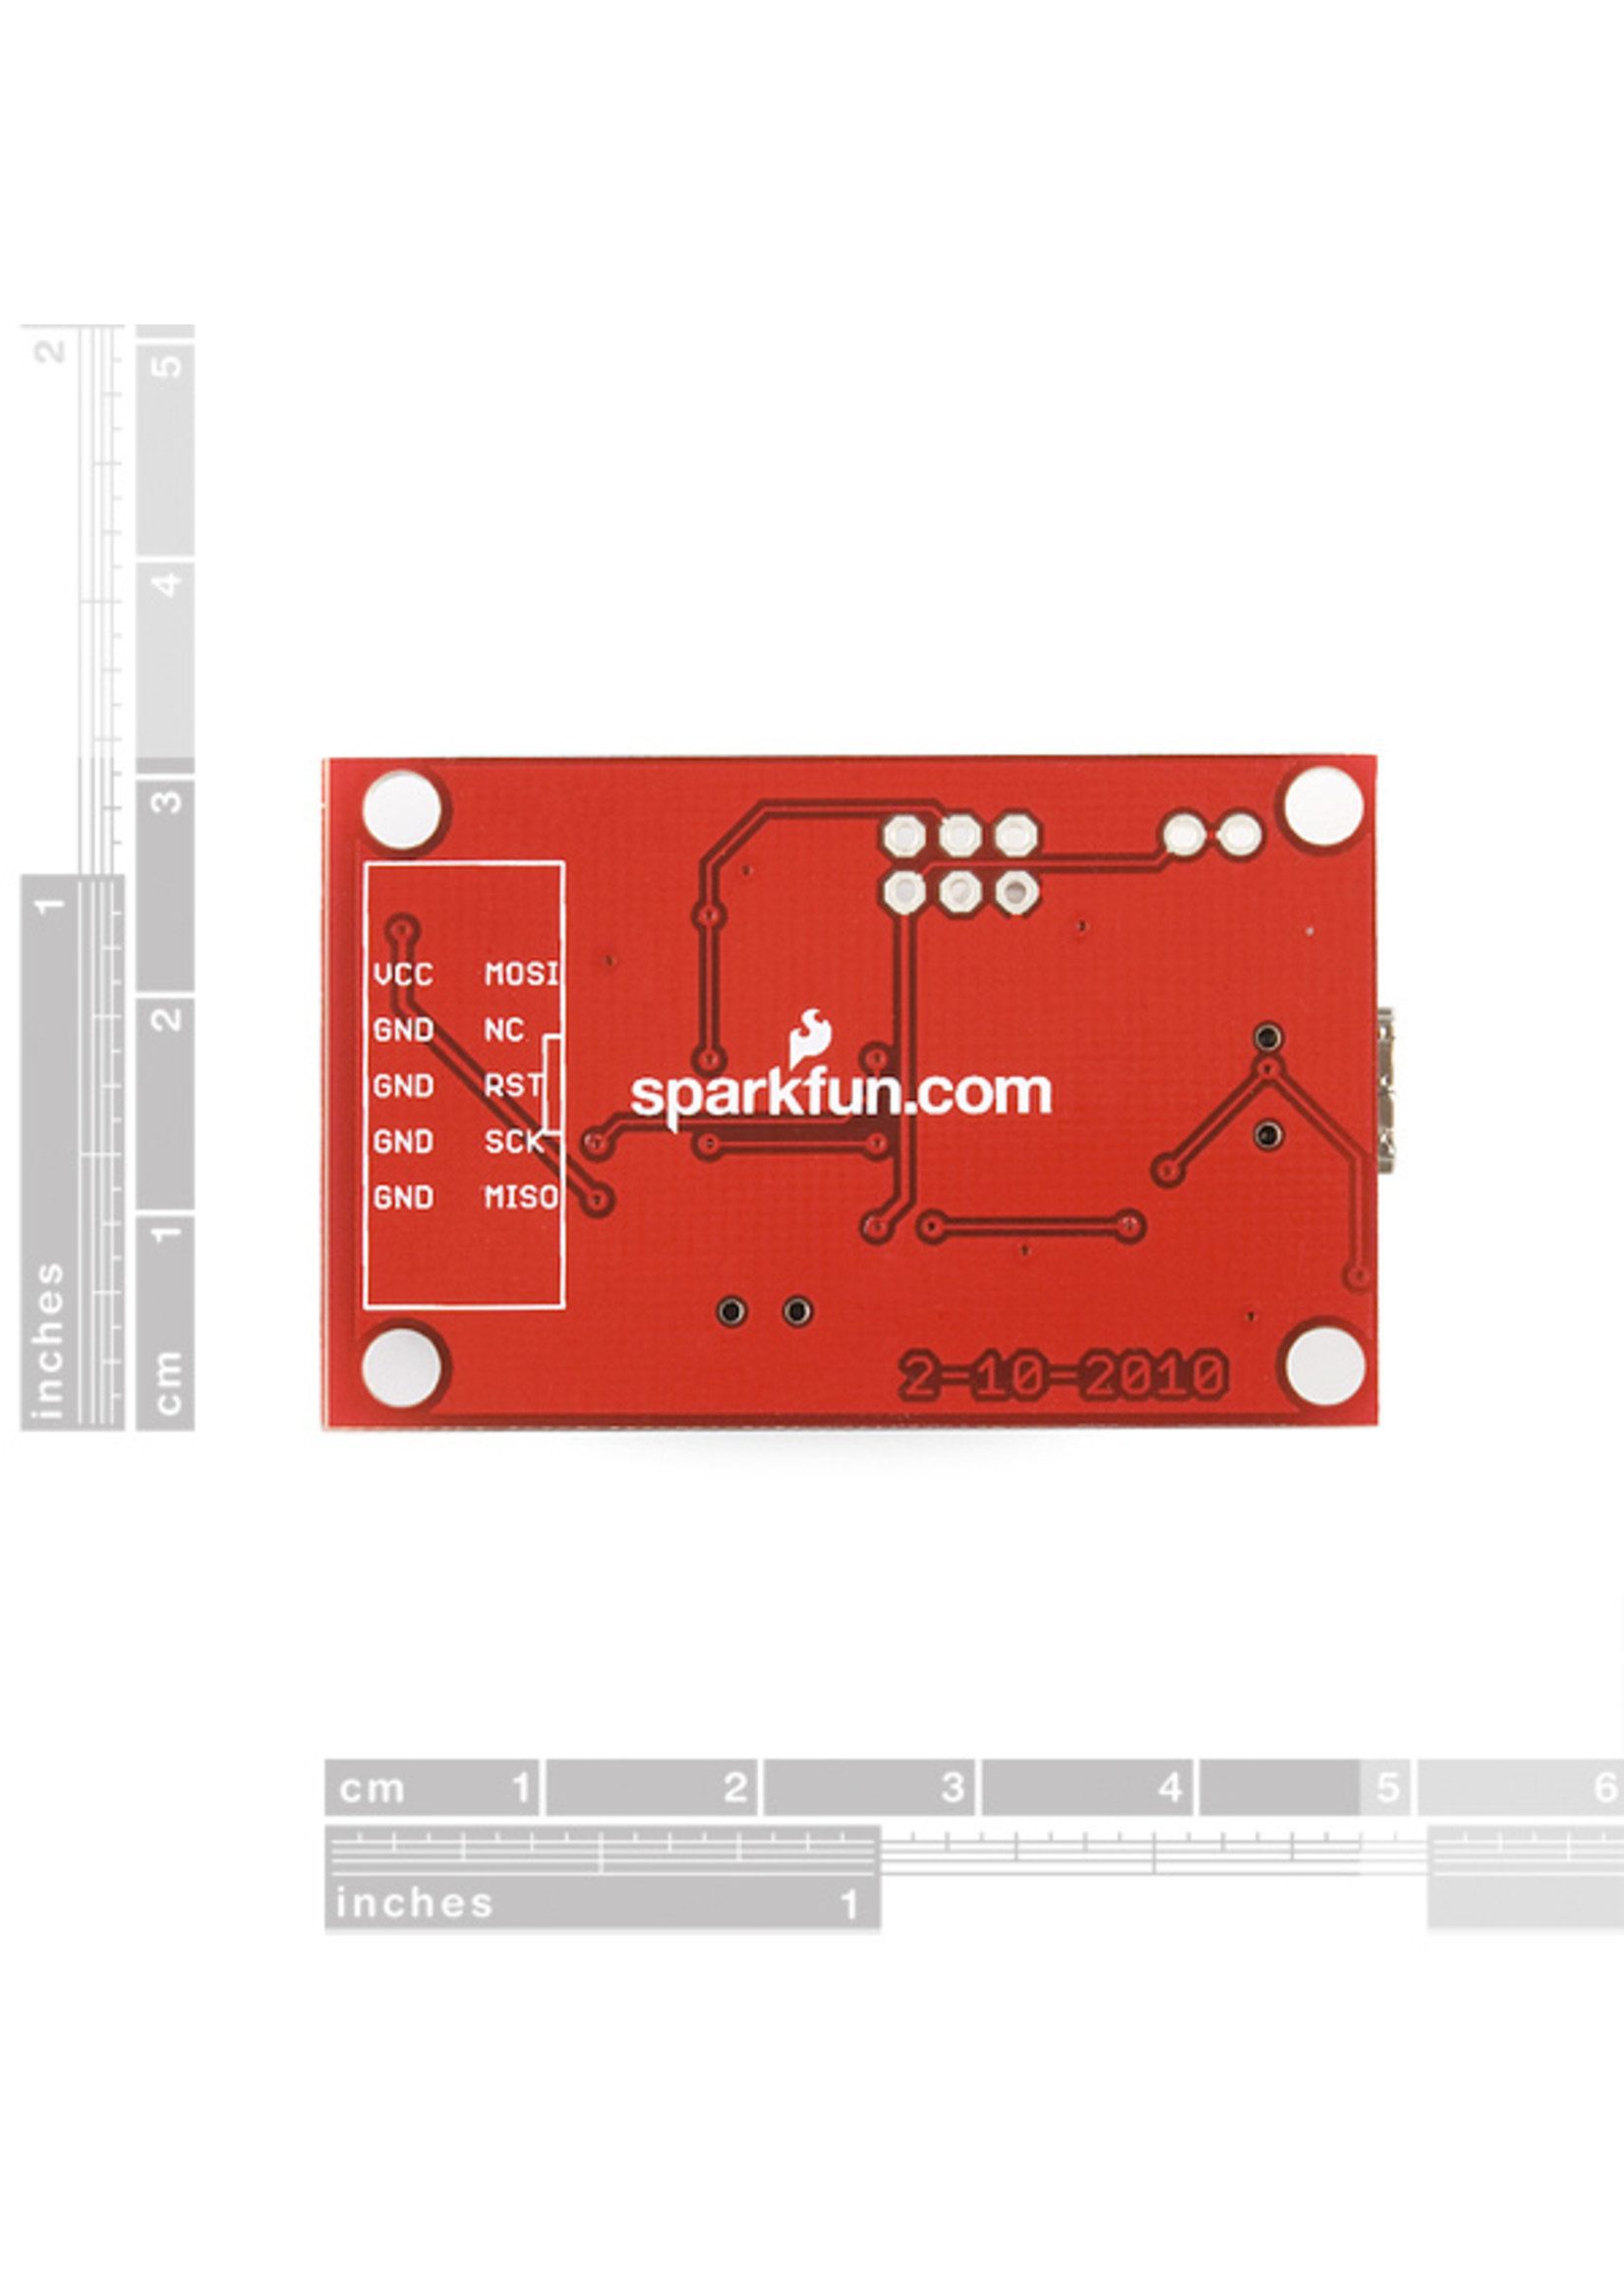 Sparkfun Pocket AVR Programmer